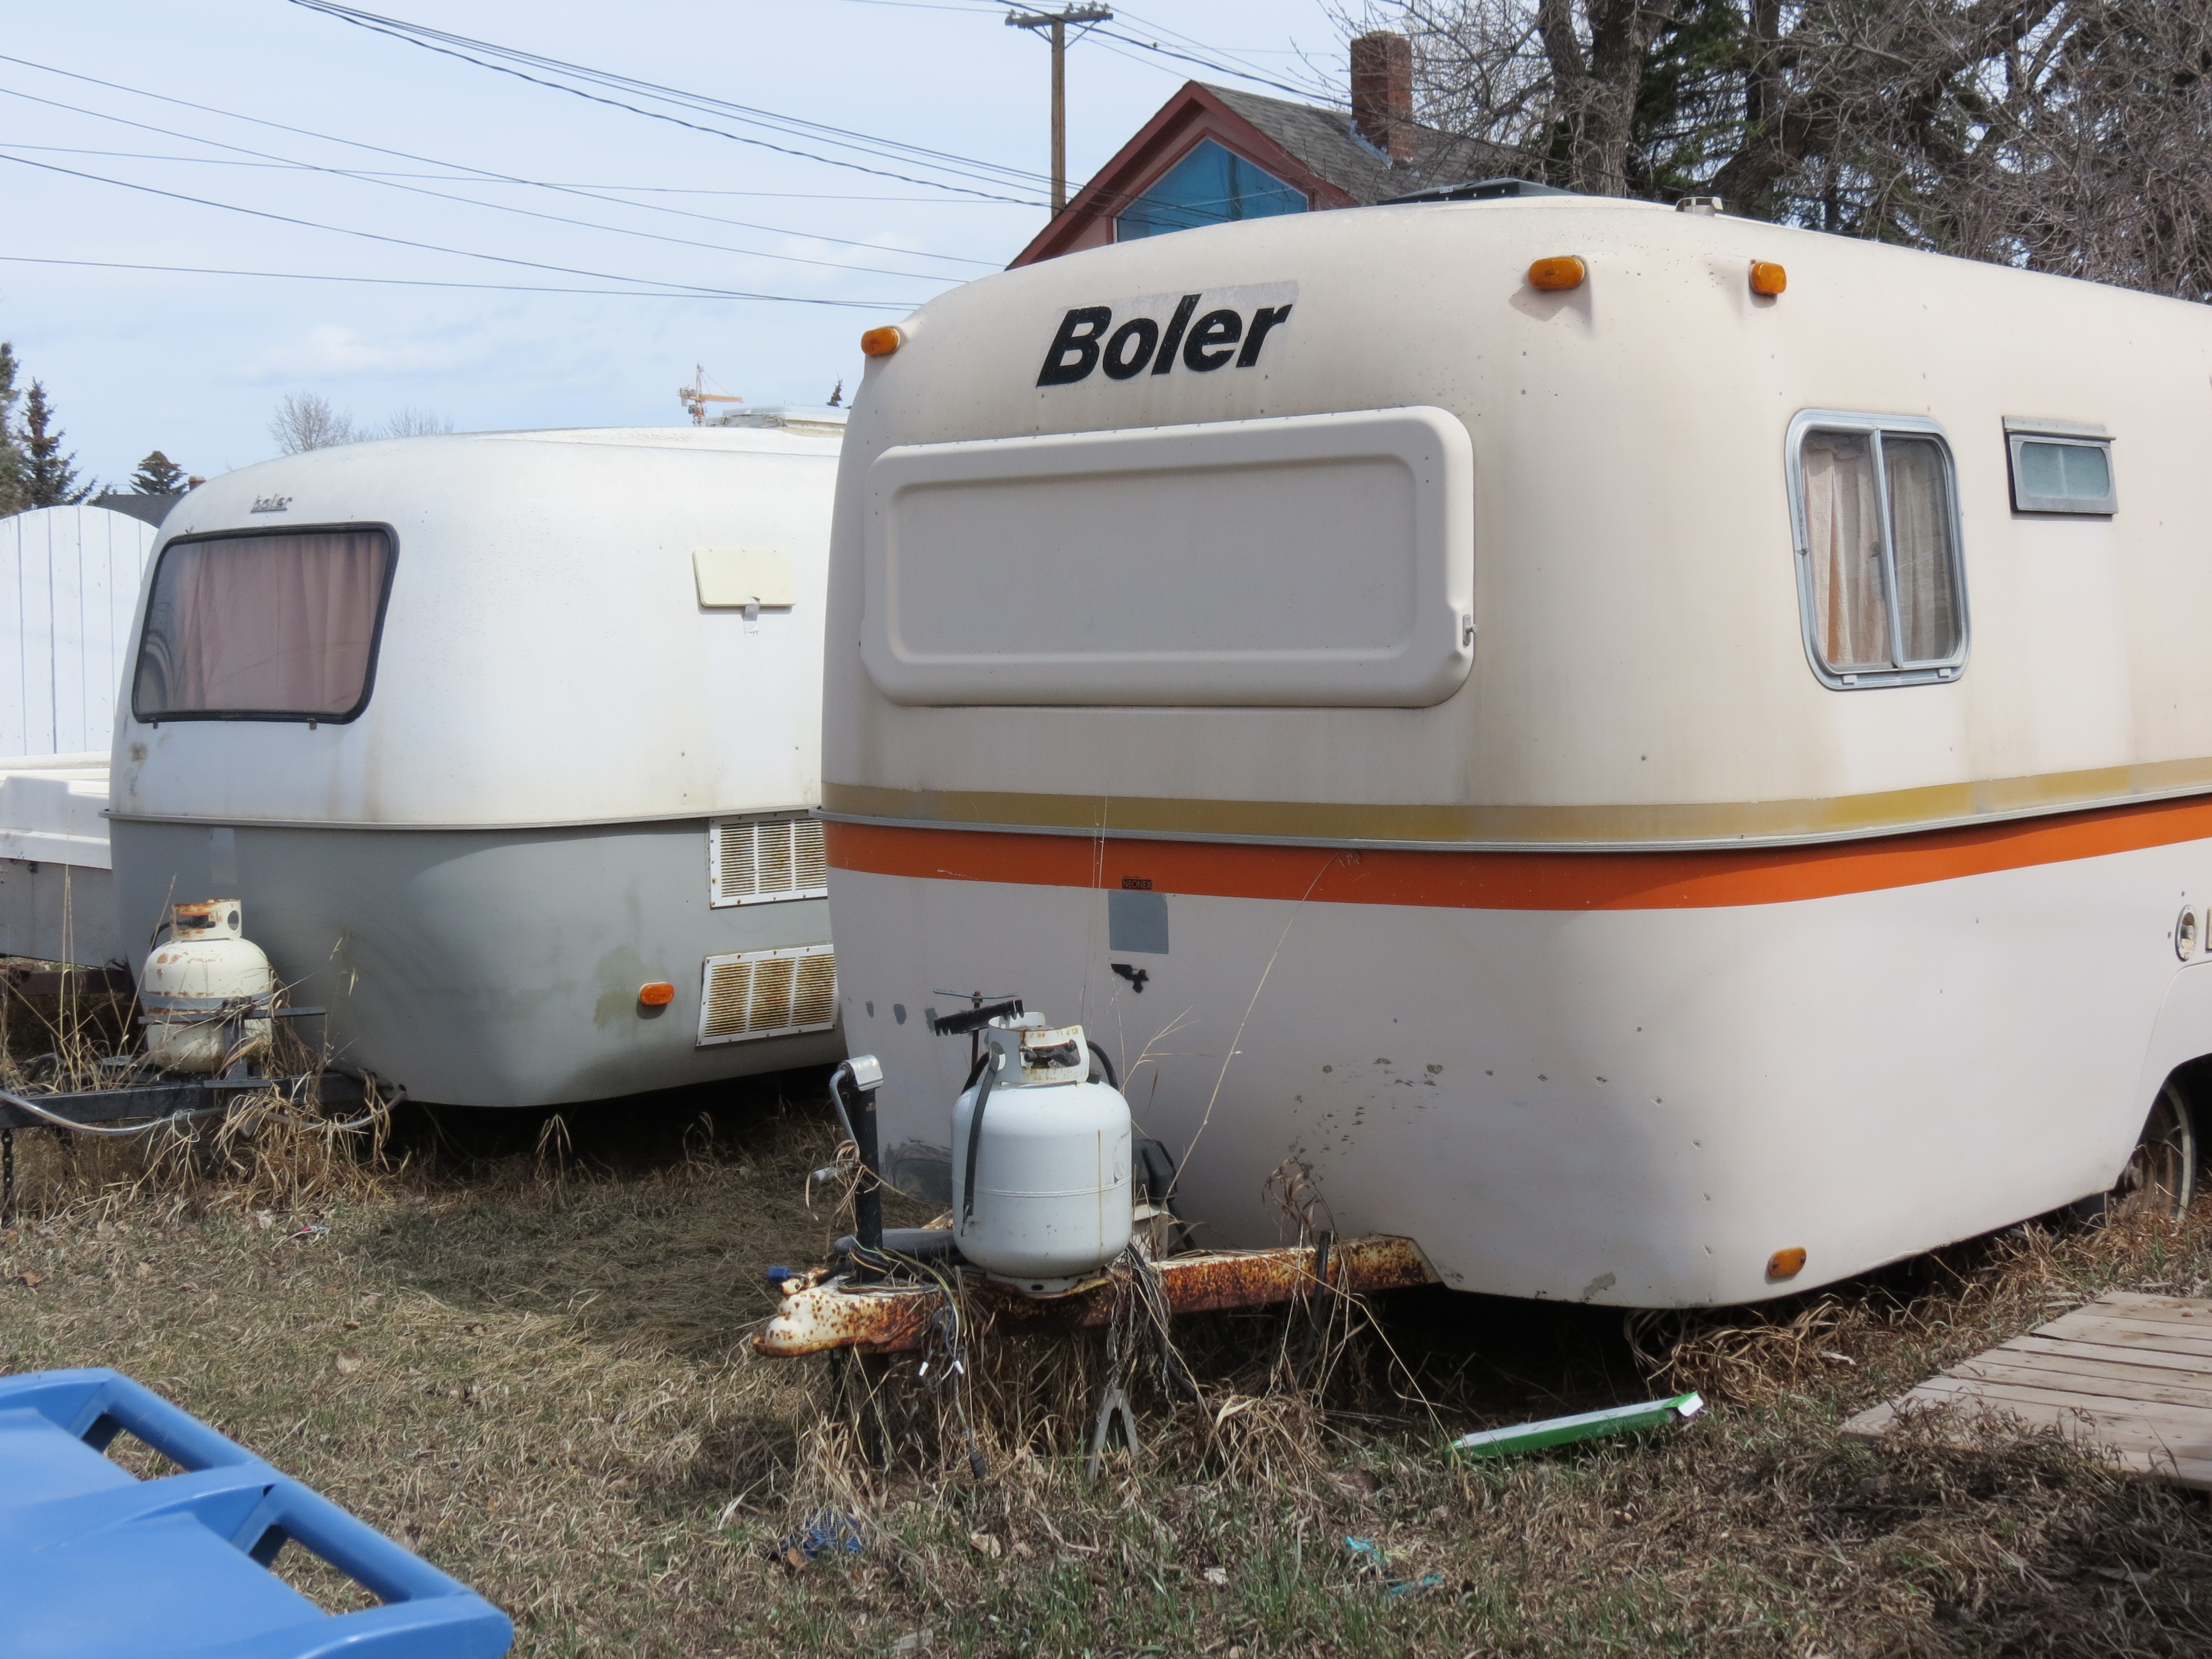 Pair of Boler trailers